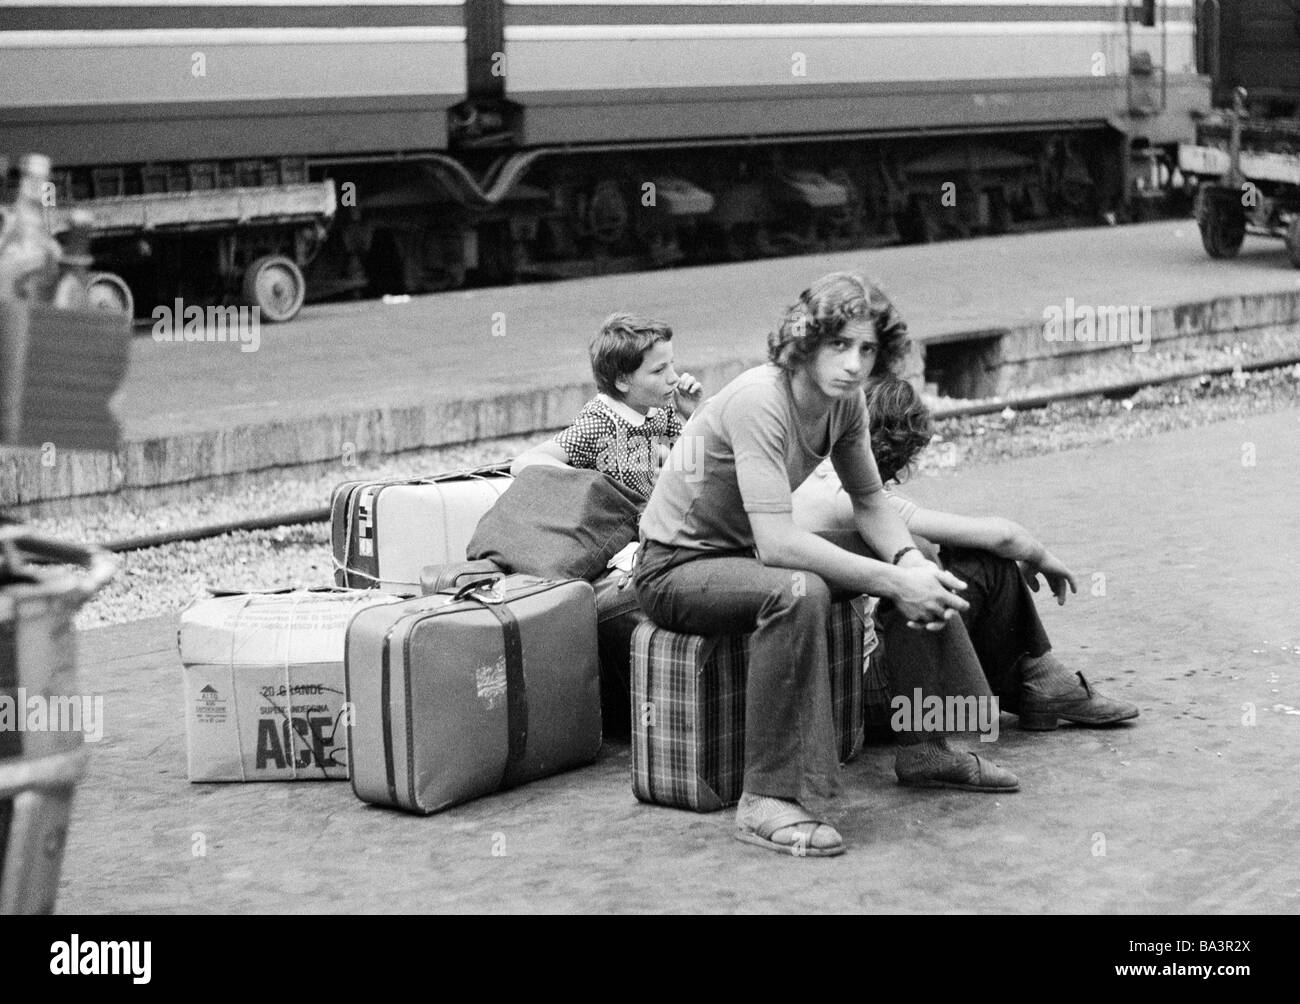 70, fotografía en blanco y negro, de la estación de tren, la Estación Central de Milán, el joven y la hermana pequeña de la plataforma se sientan en sus equipajes y esperar el tren, de 15 a 18 años, de 10 a 14 años, Italia, Lombardía, Milán Foto de stock